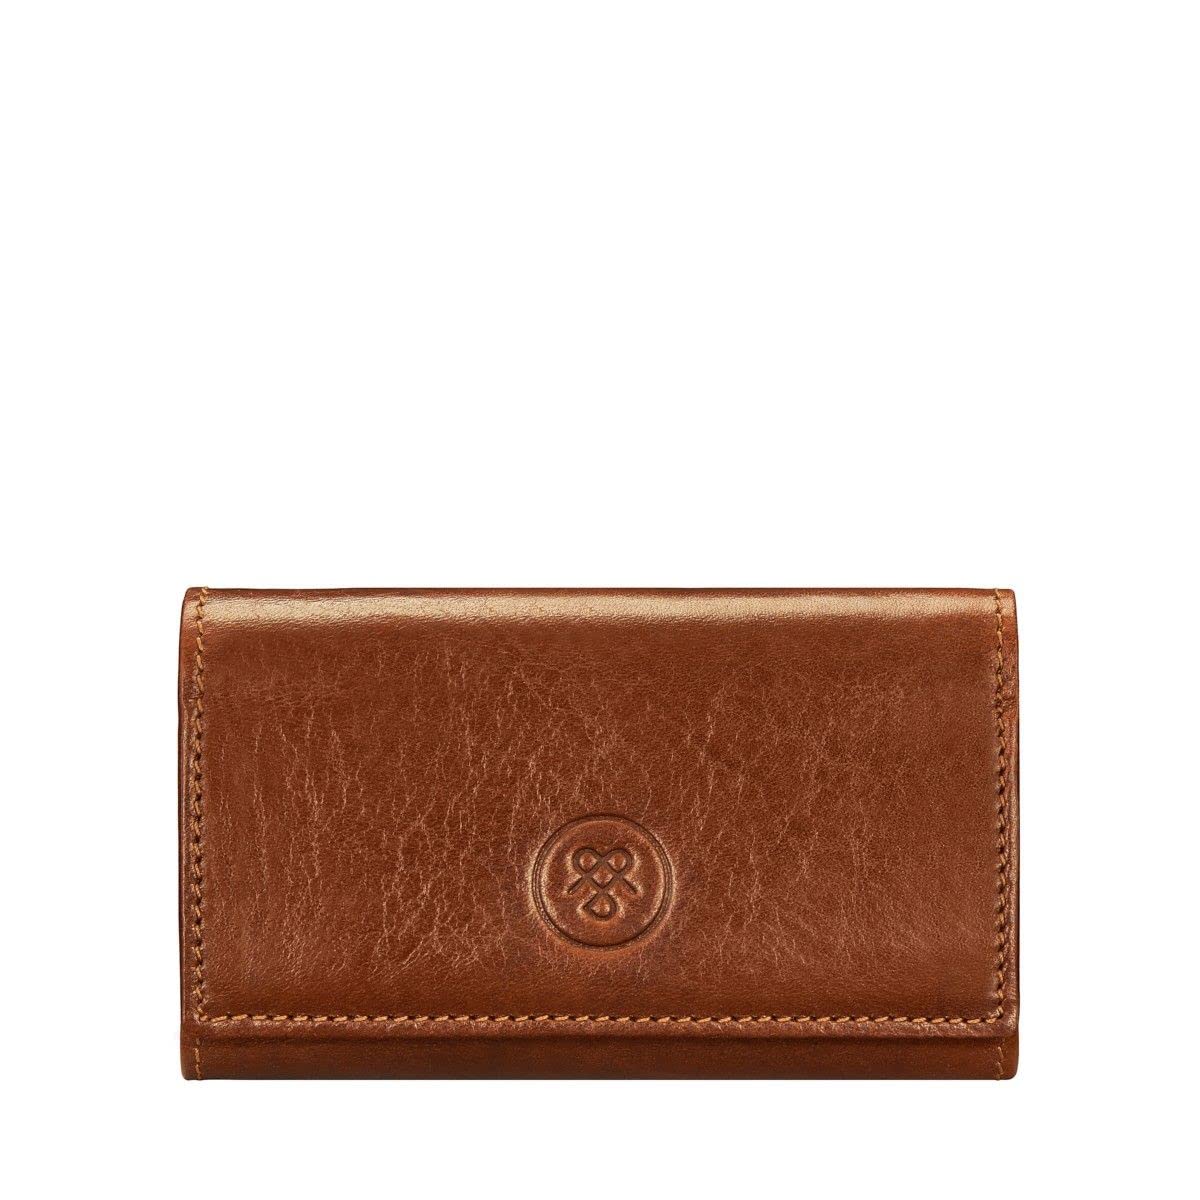 Maxwell Scott | Luxury Leather Key Case Wallet | The Lapo | 6 Hooks Key Holder Pouch for Men Women